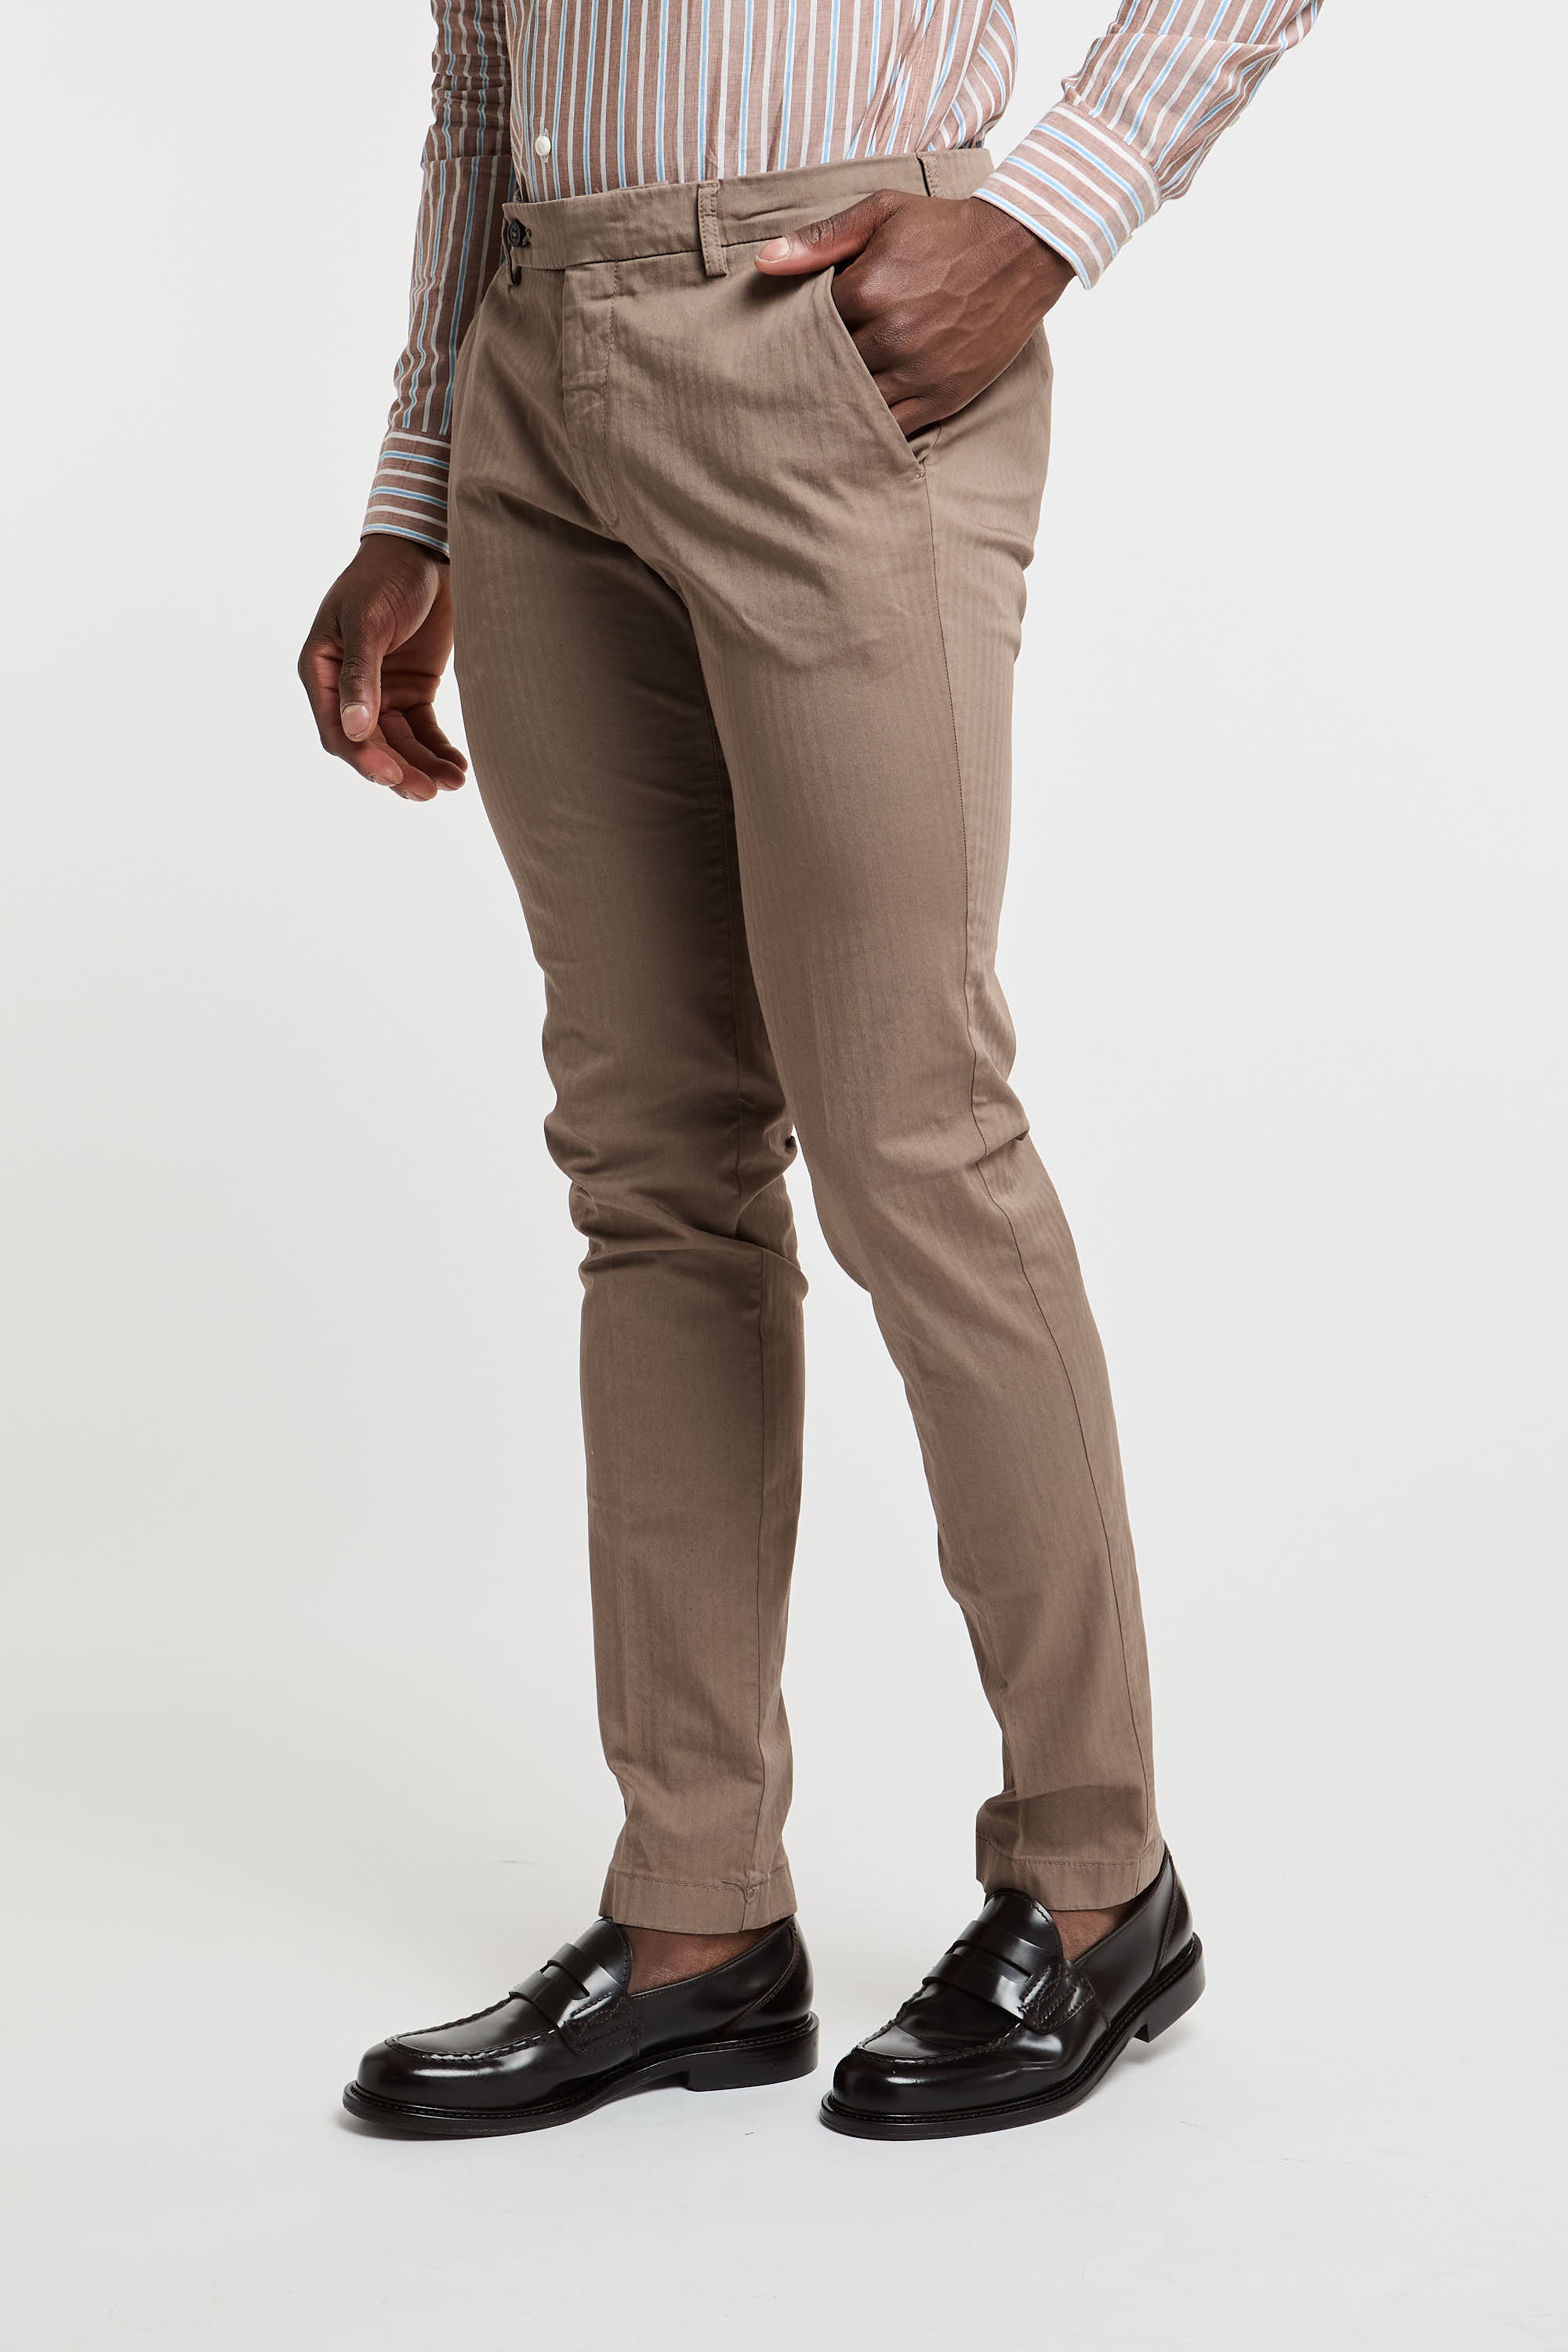 Berwich Rescato Brown Trousers-5